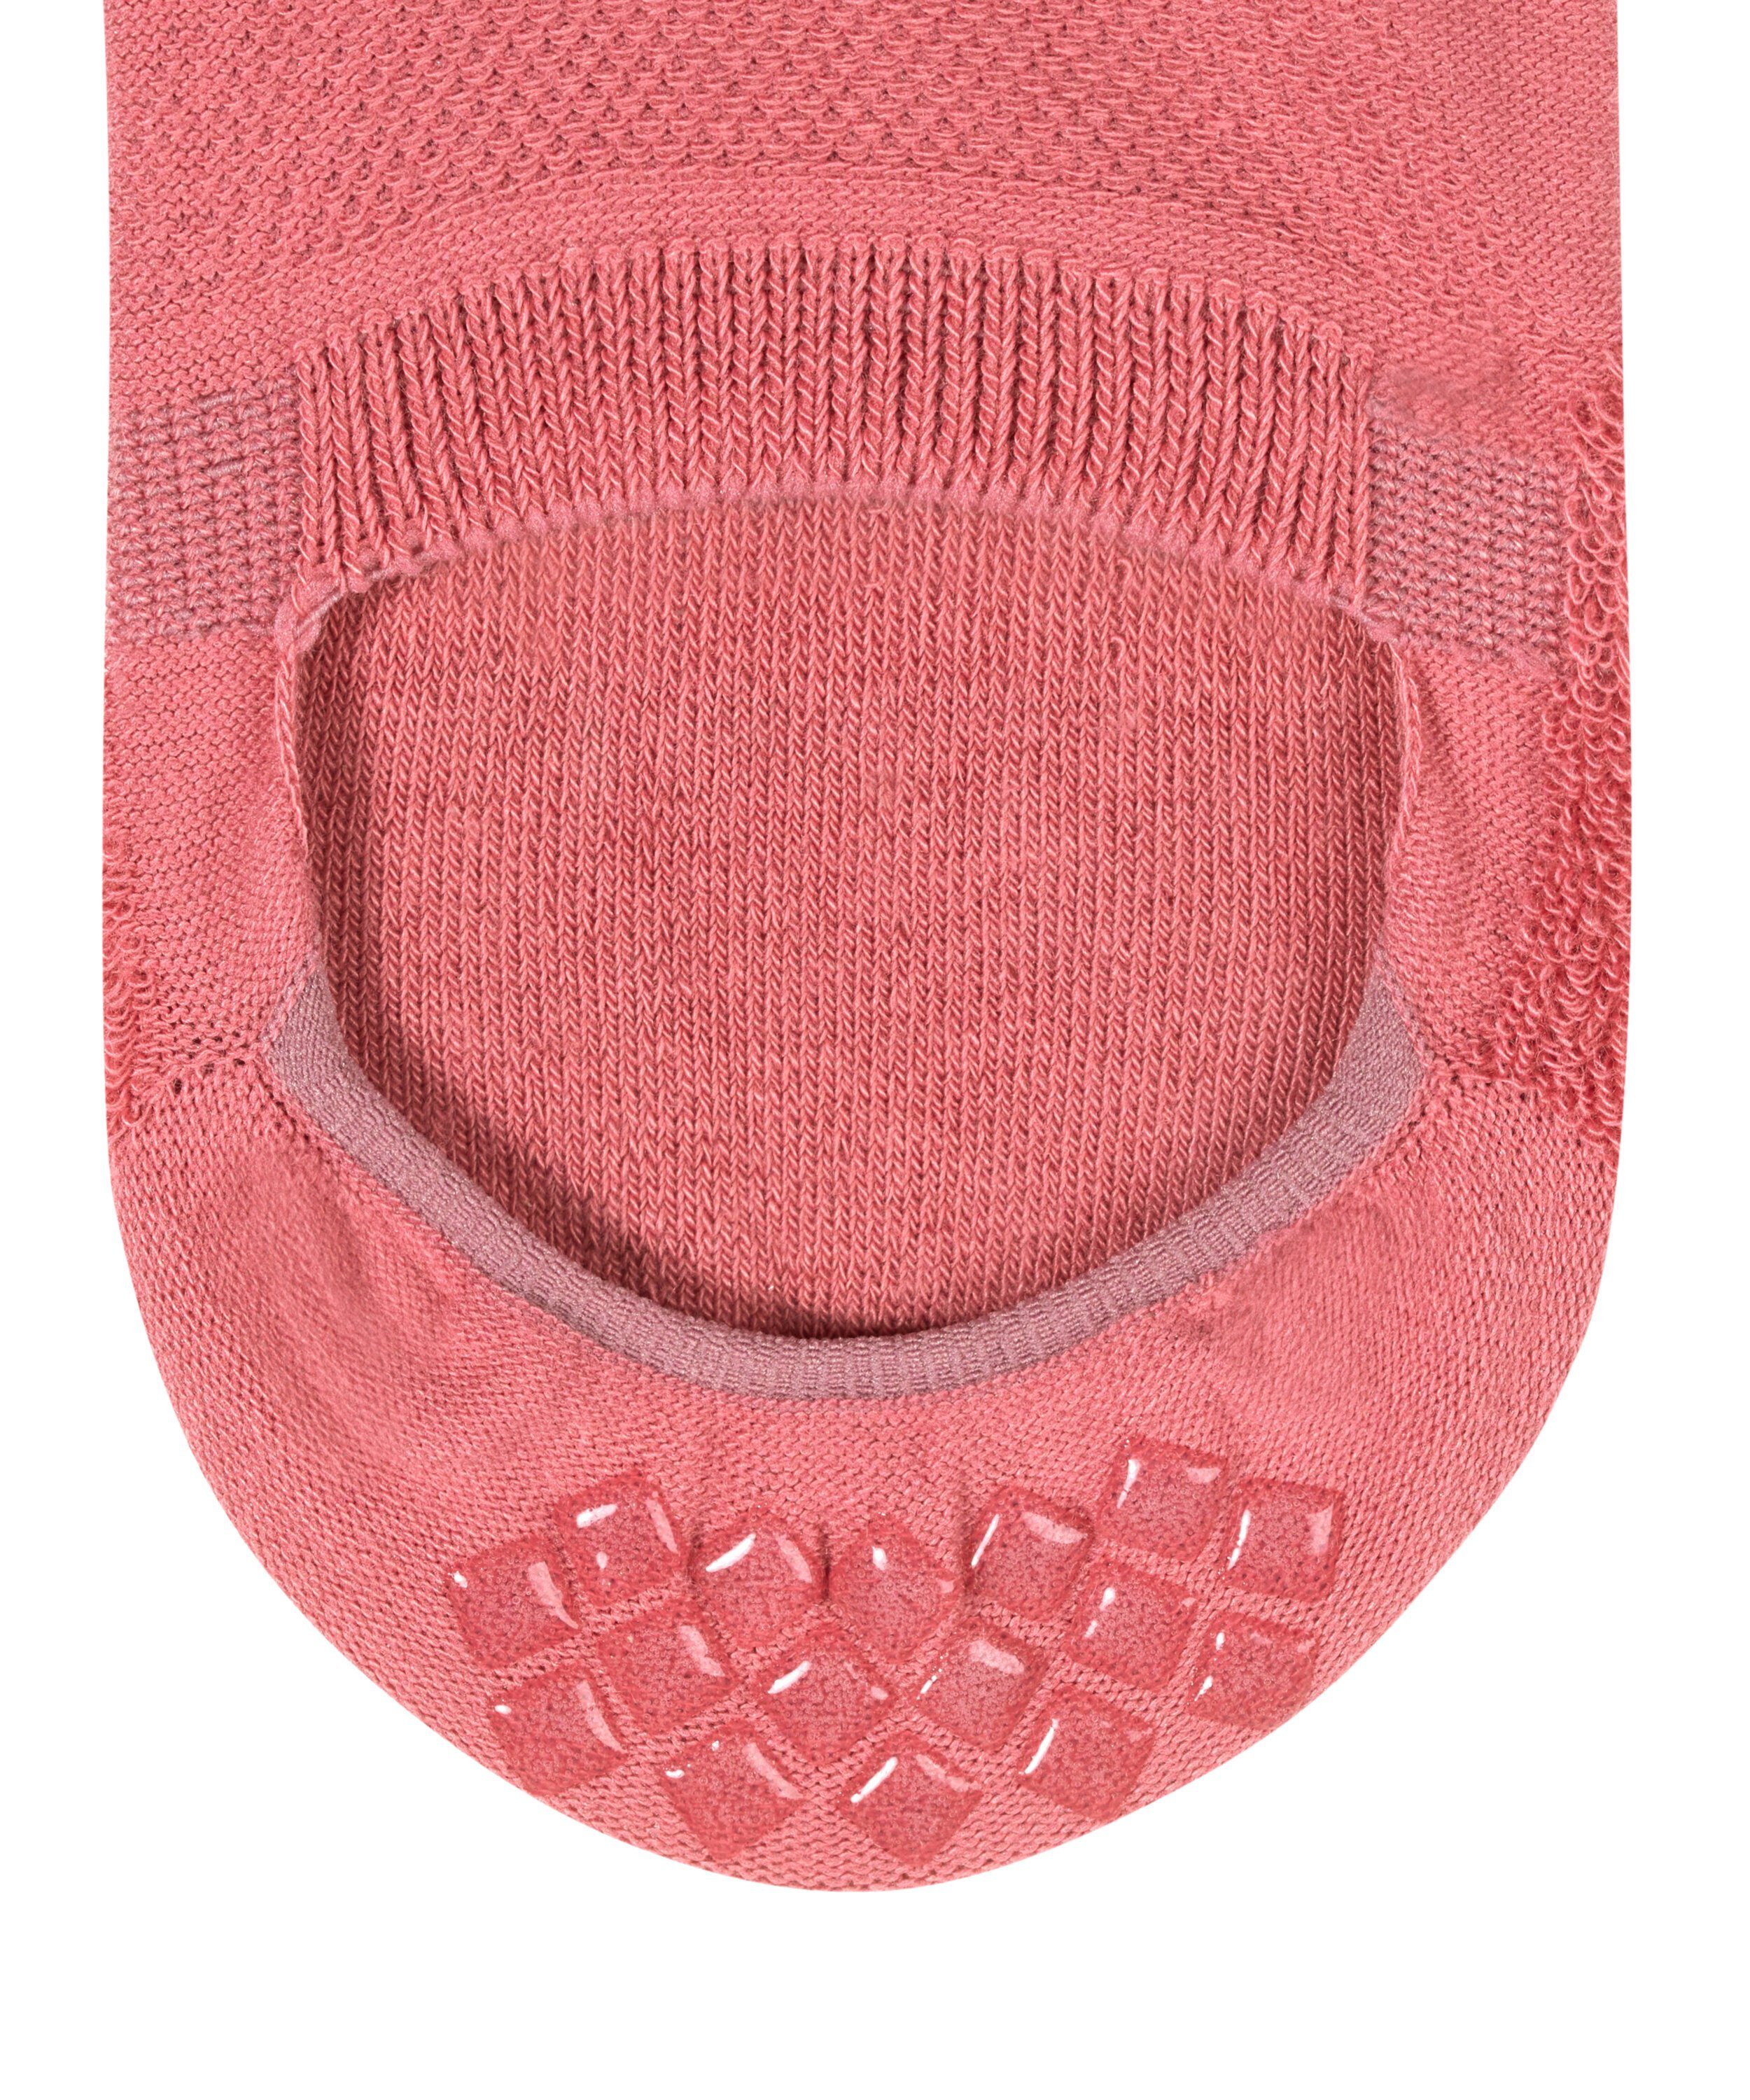 (8684) Cool Ferse Kick Silikon durch Füßlinge in pink rutschfest der FALKE powder